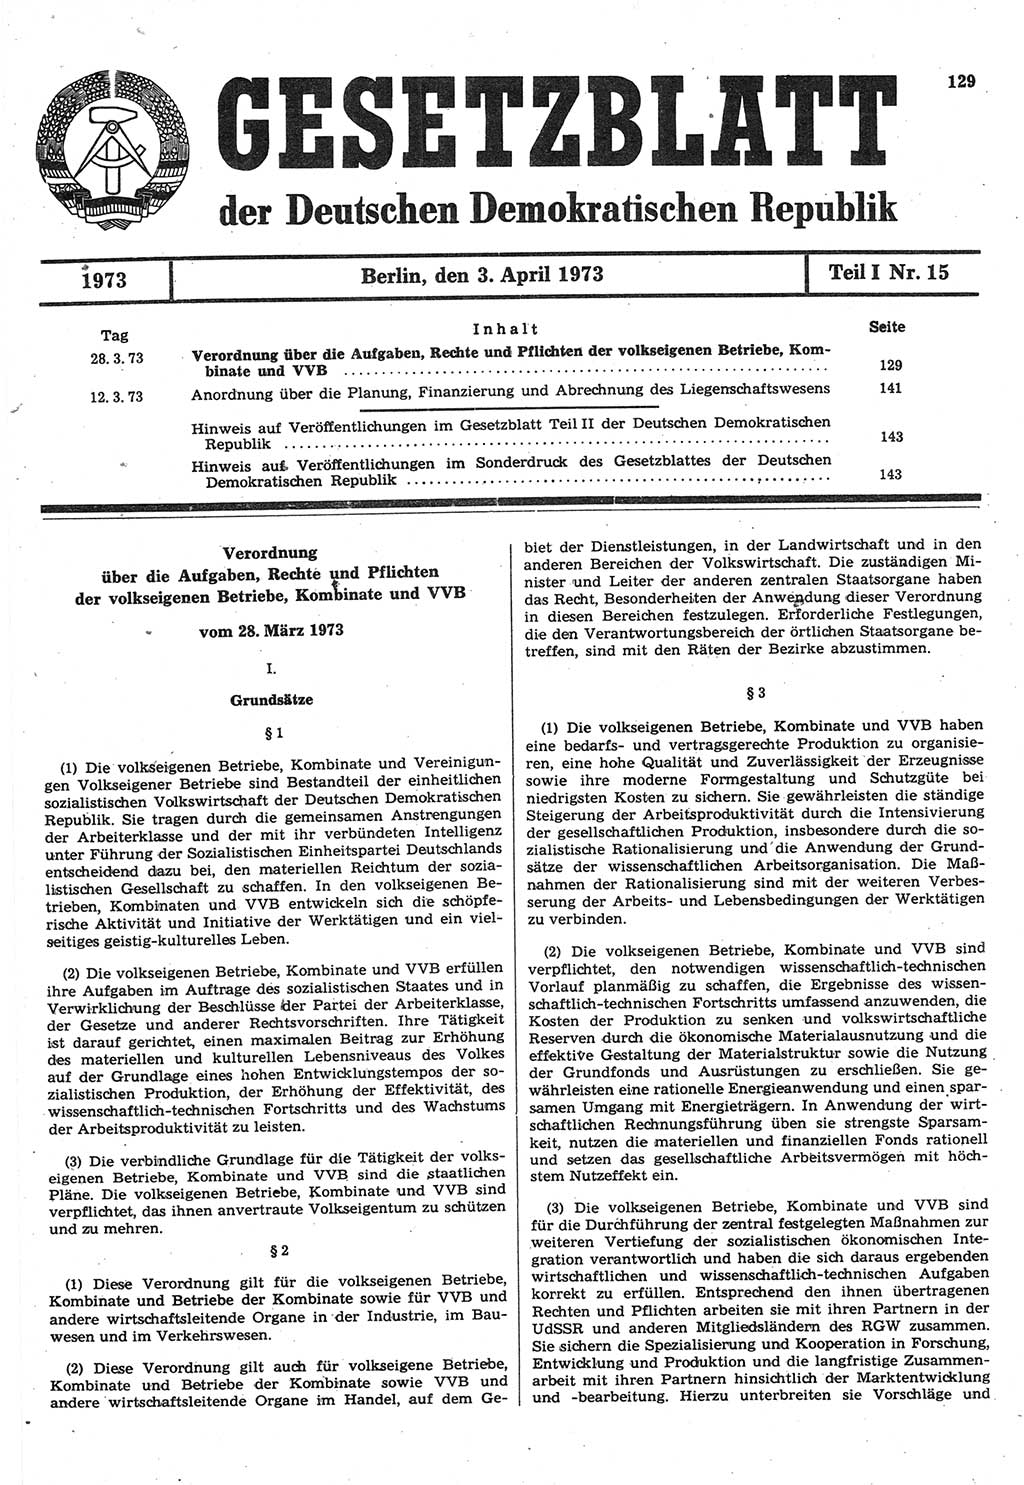 Gesetzblatt (GBl.) der Deutschen Demokratischen Republik (DDR) Teil Ⅰ 1973, Seite 129 (GBl. DDR Ⅰ 1973, S. 129)